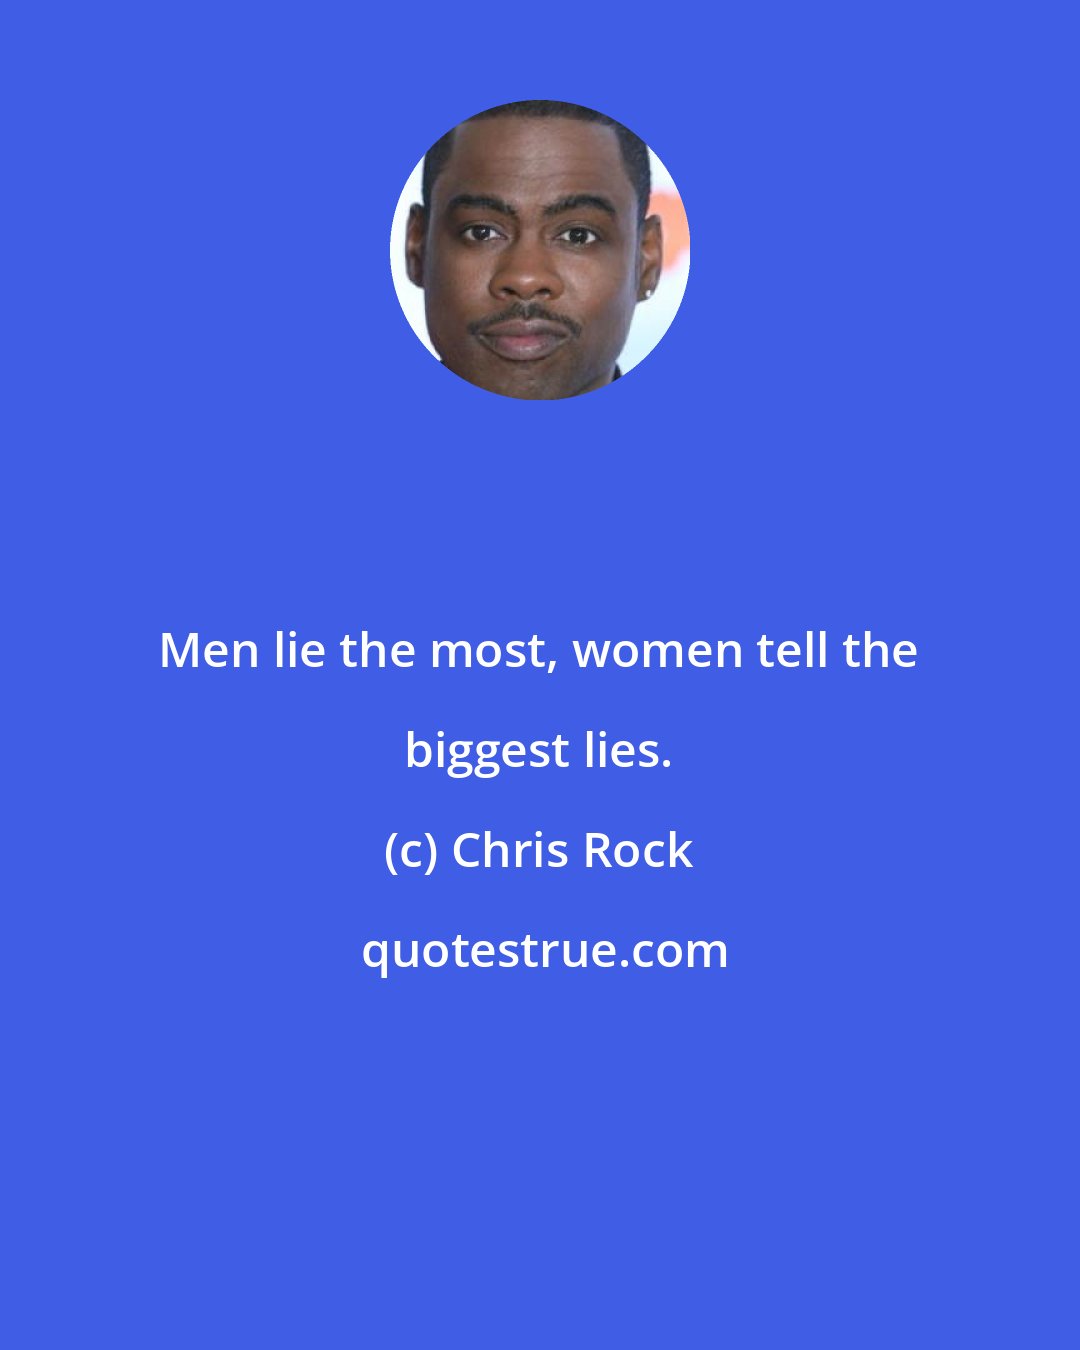 Chris Rock: Men lie the most, women tell the biggest lies.